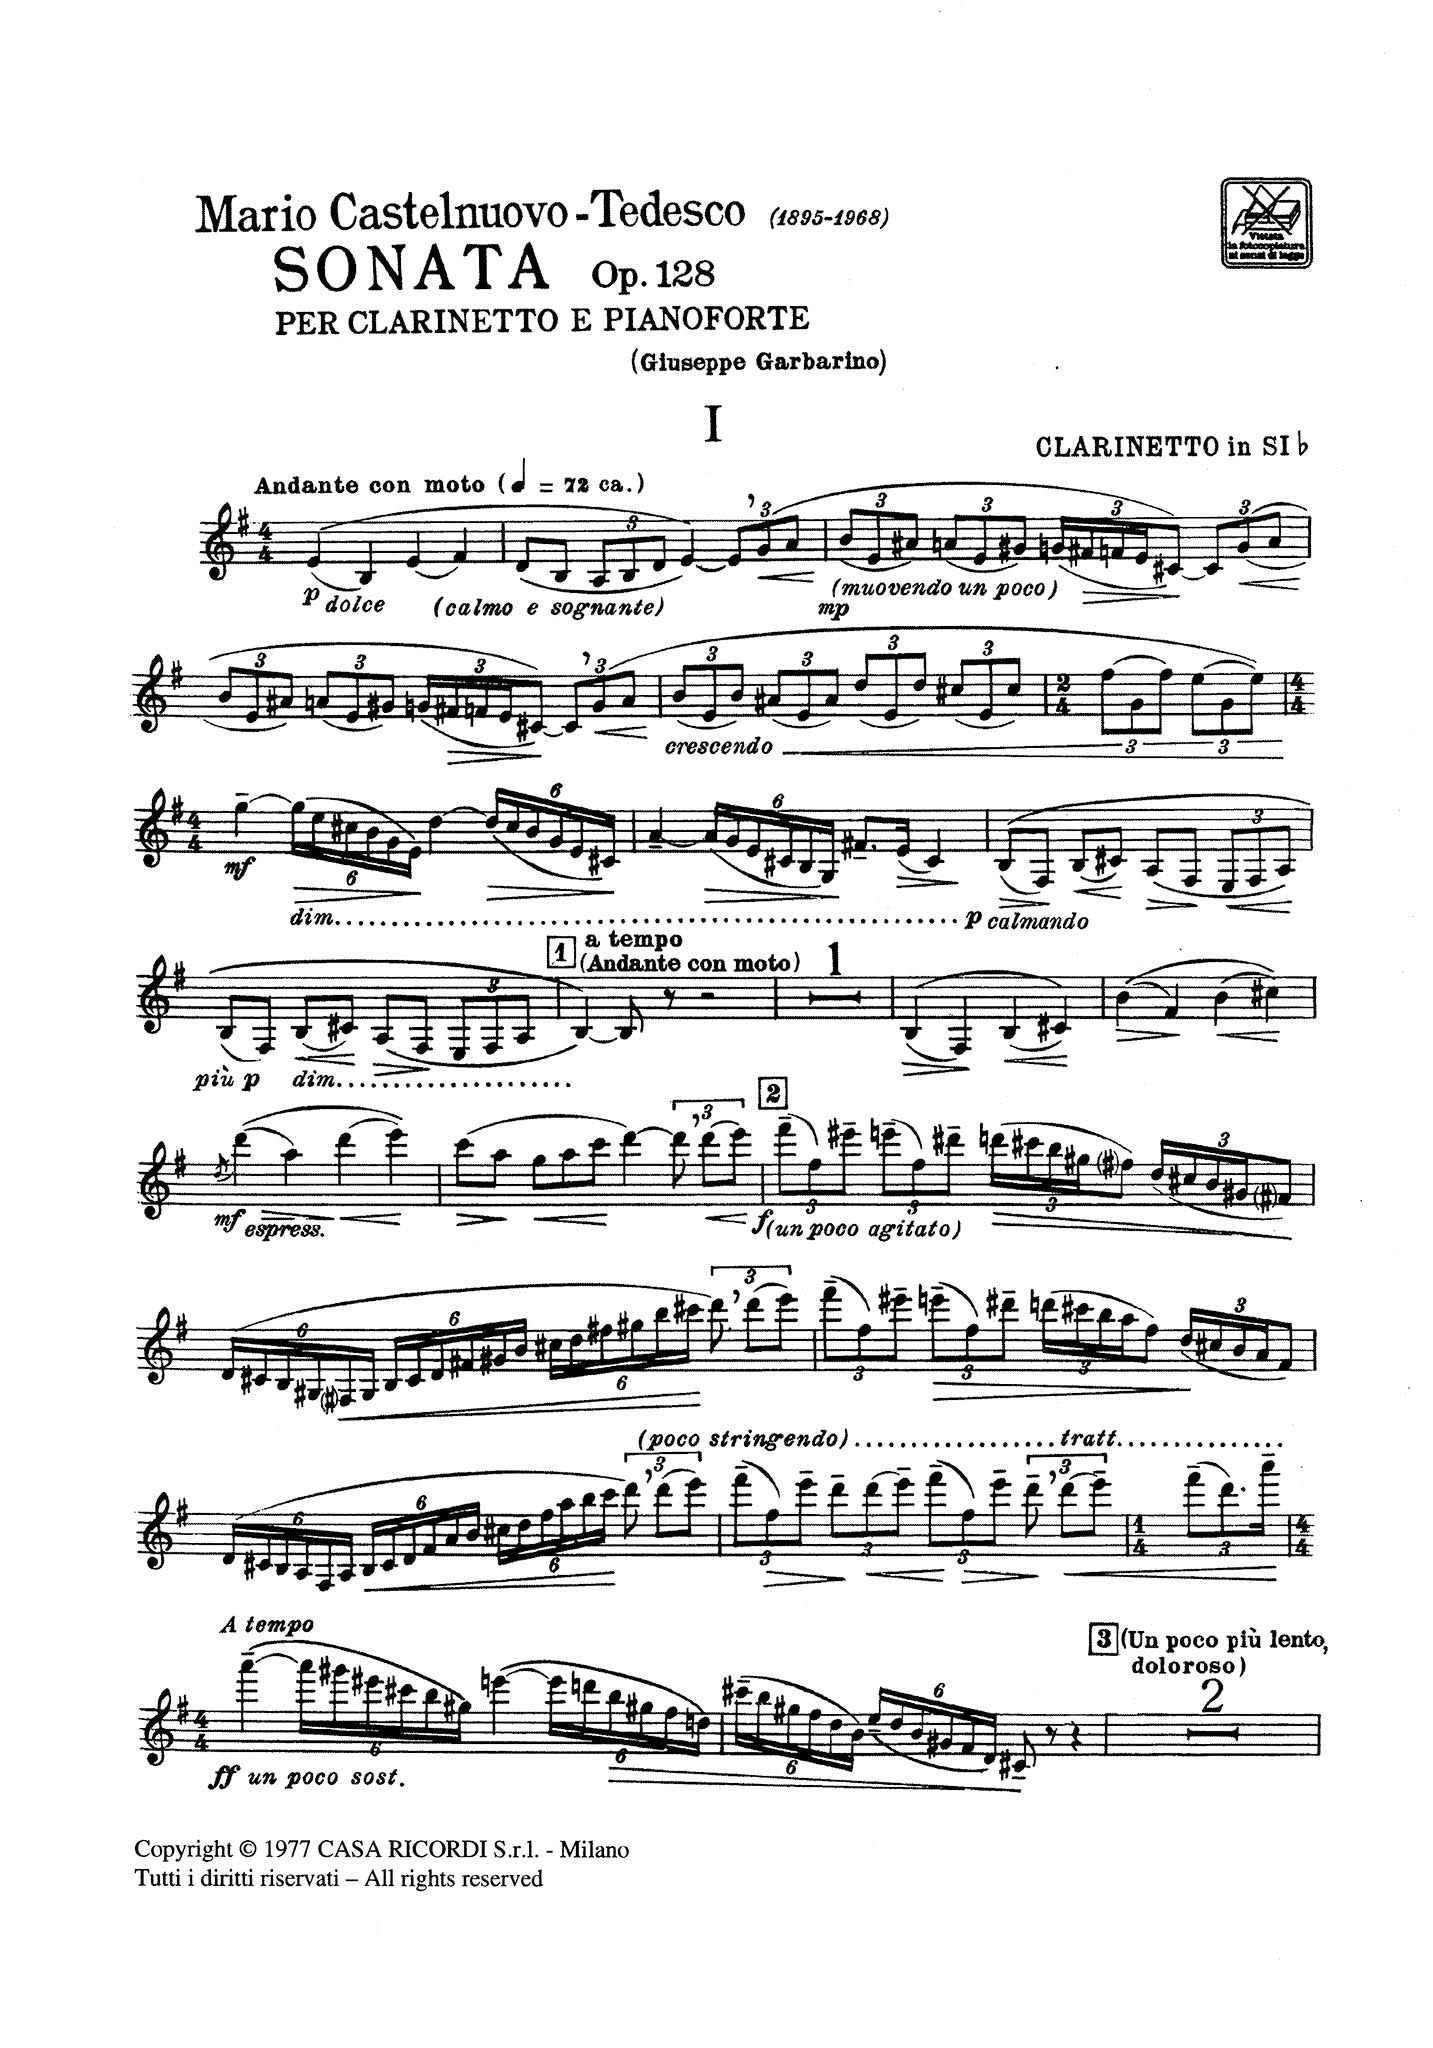 Sonata, Op. 128 Clarinet part